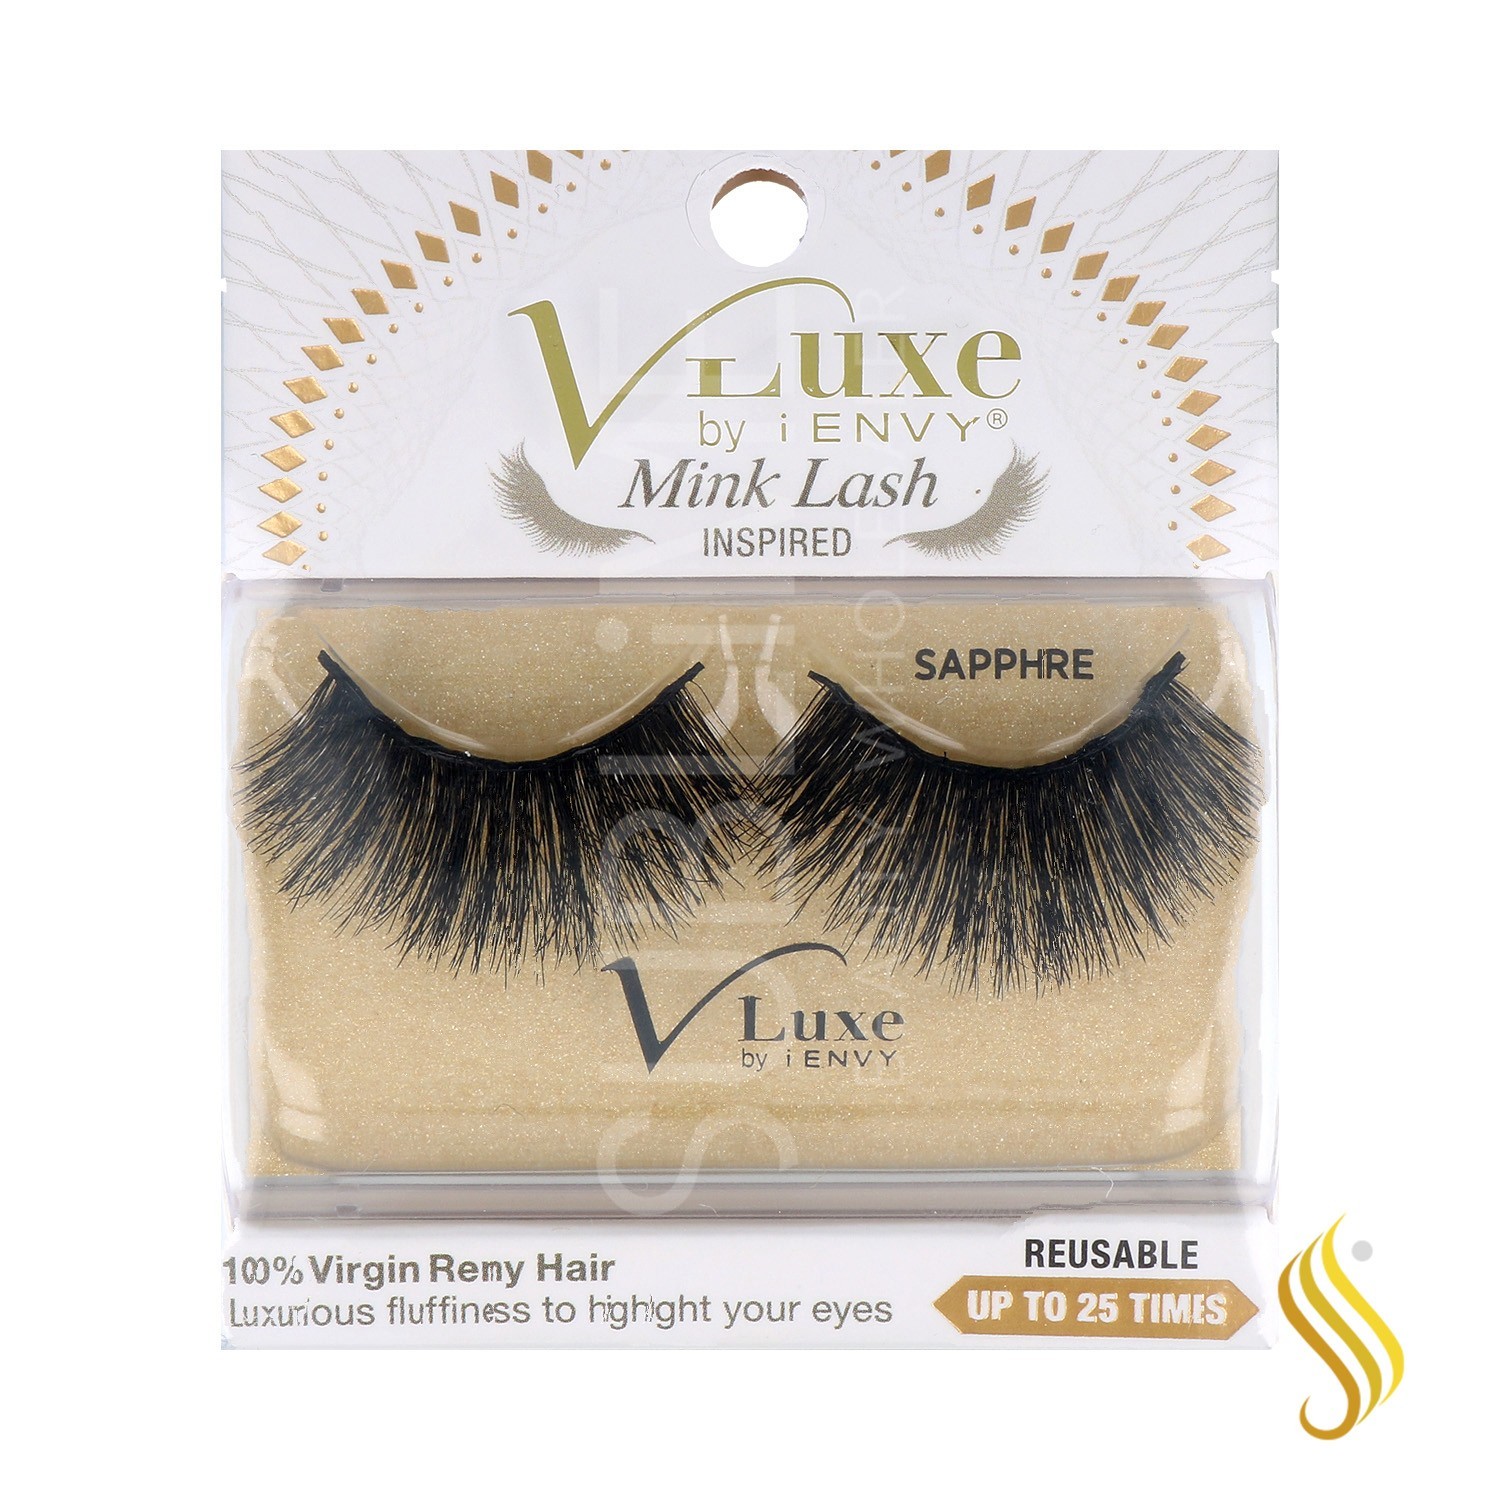 I Envy V Luxe Remy Hair Minklash/Pestaña Inspired Sapphire (Vlef04)